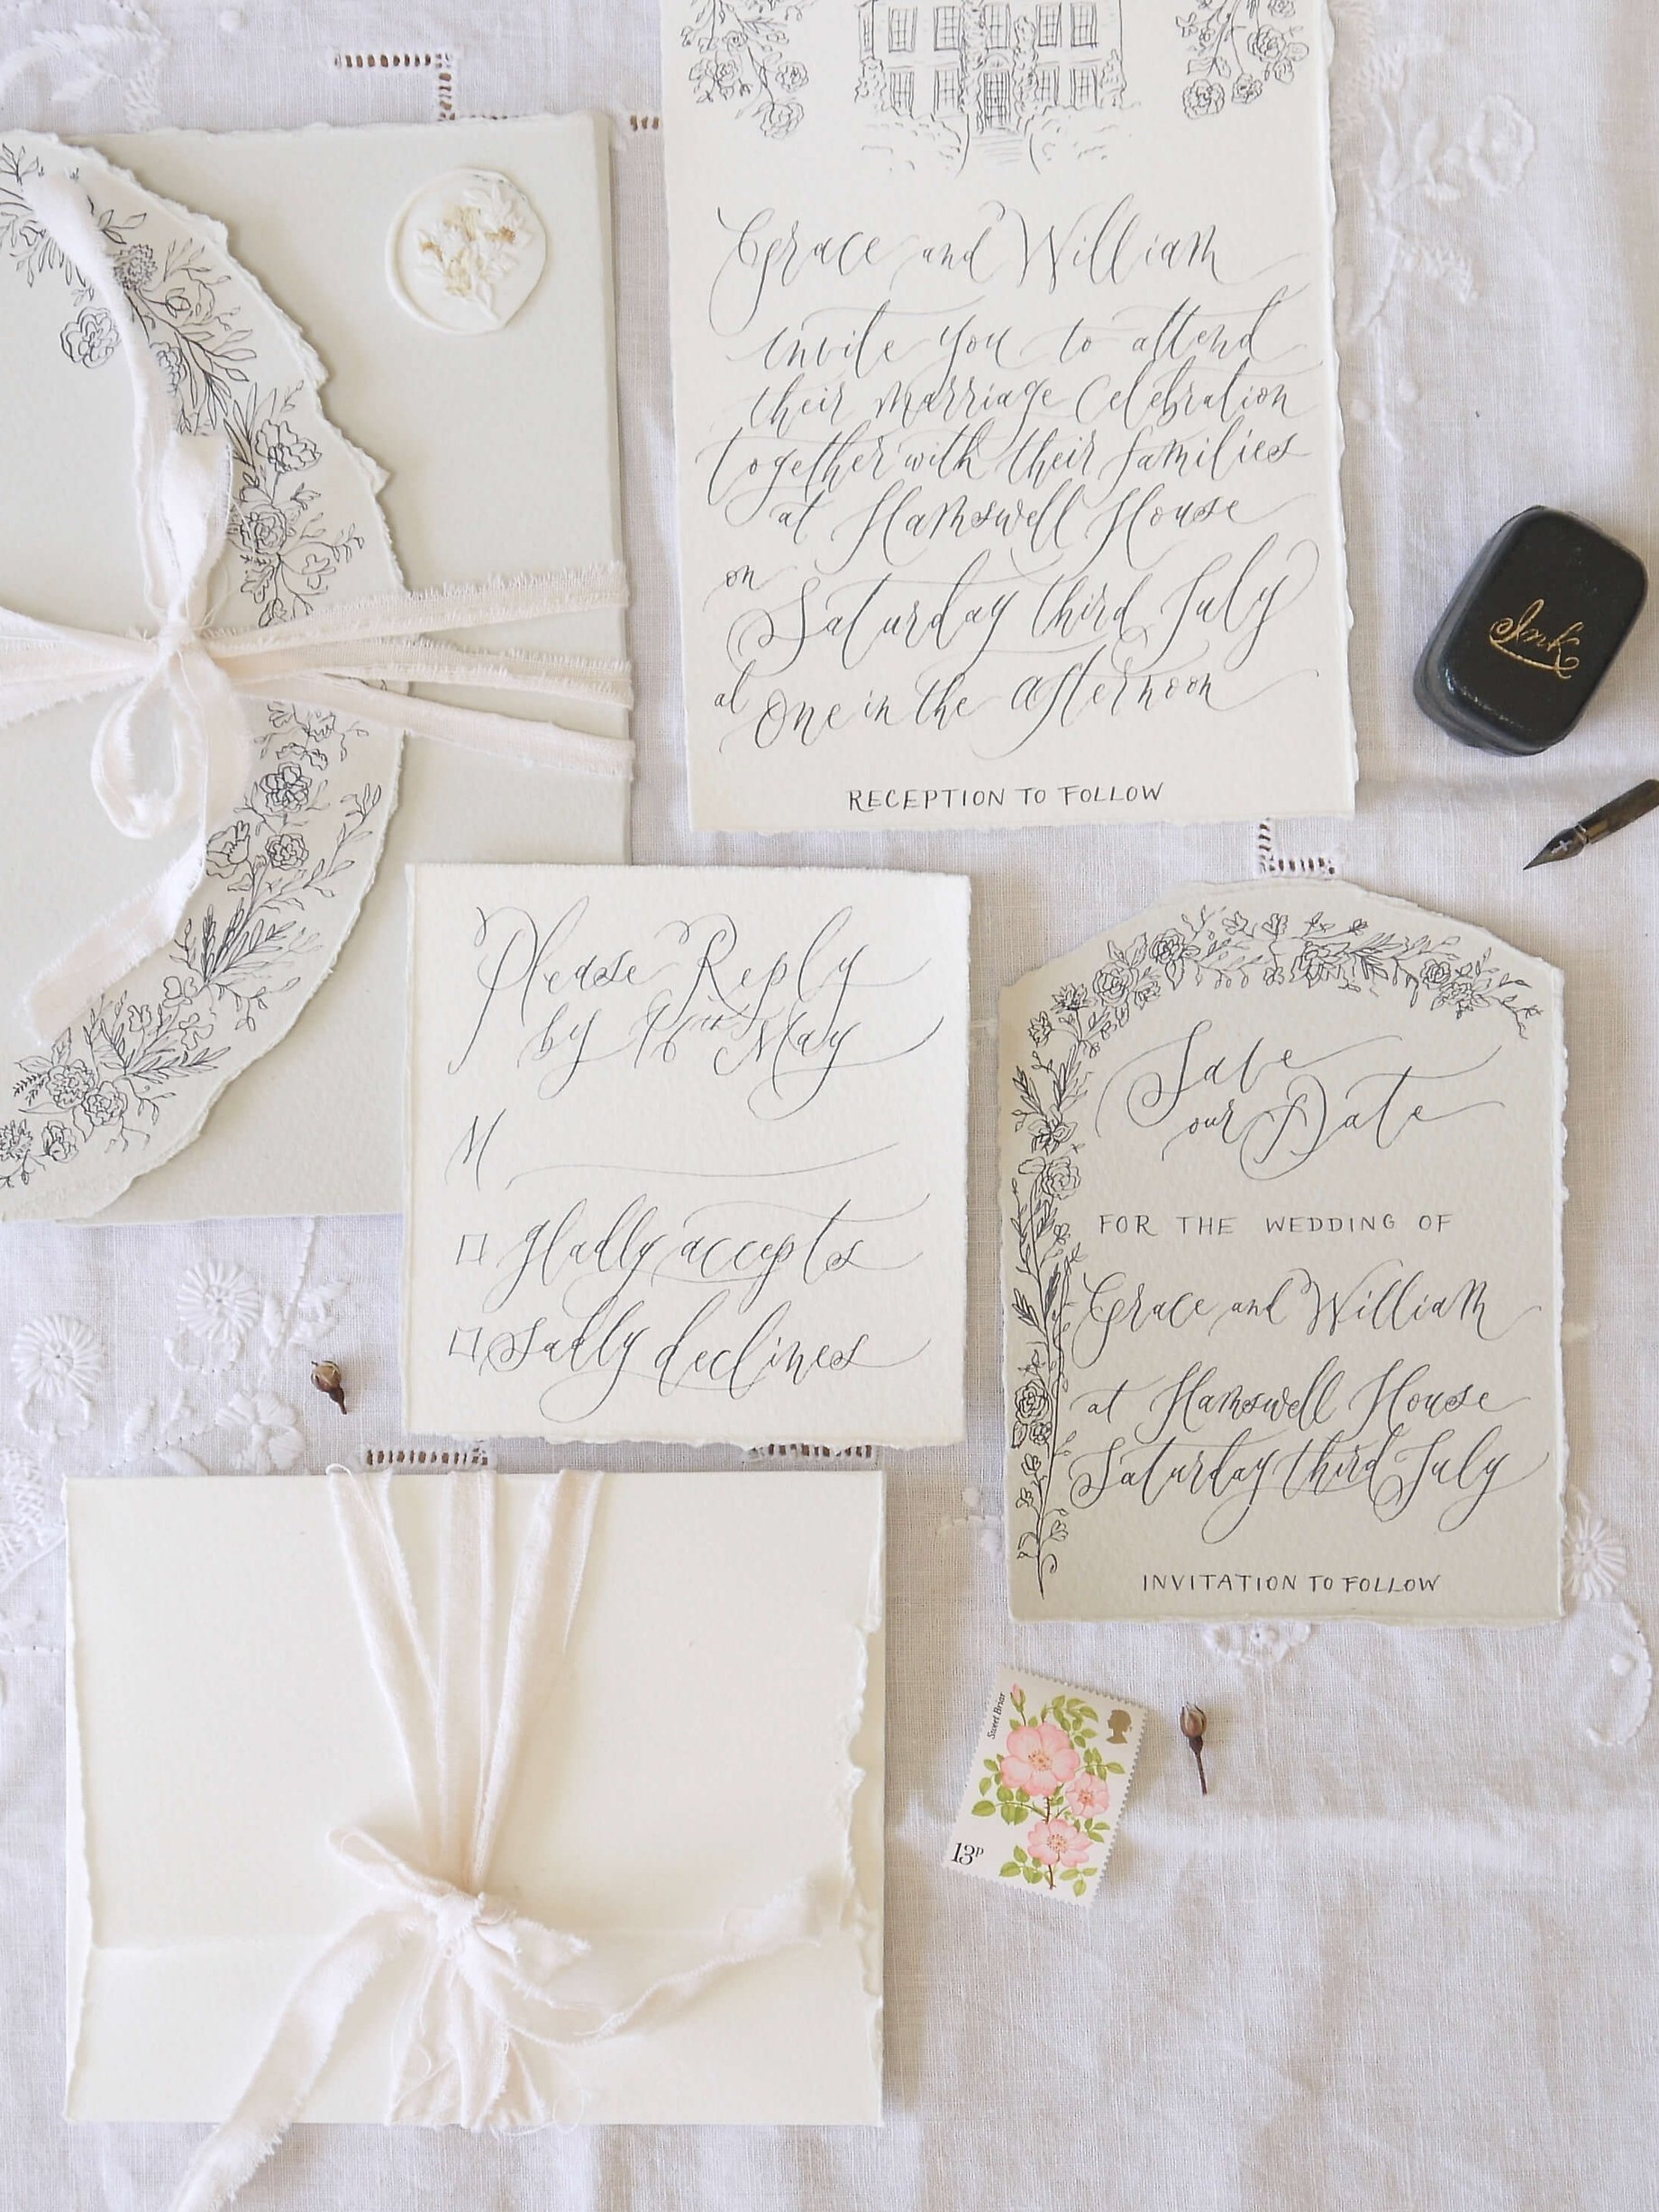 Illustrated wedding invitations